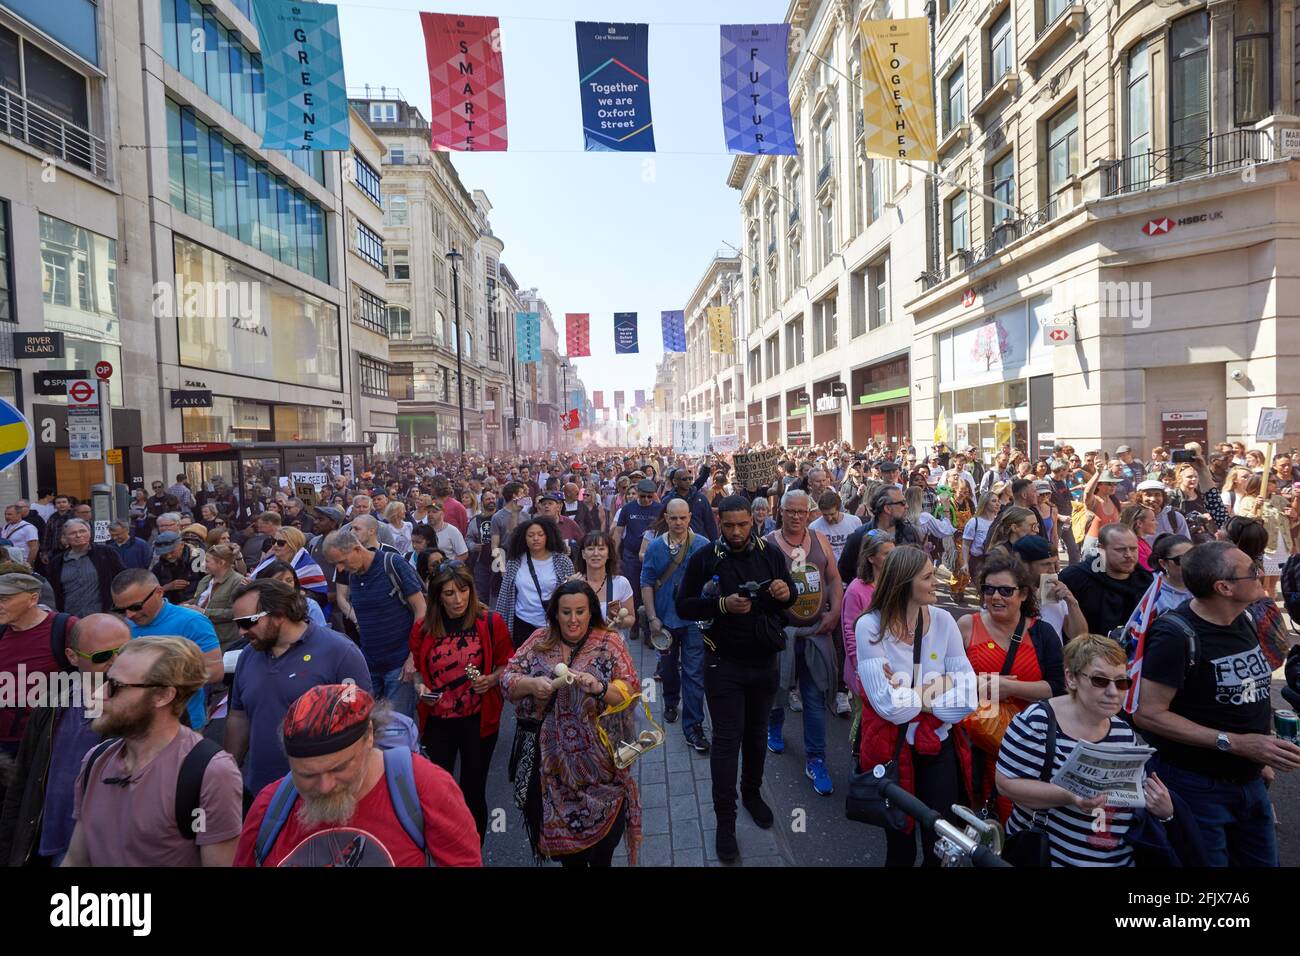 Londres, Reino Unido - 24 Apr 2021: Miles de personas llenaron Oxford Street mientras marchaban en el centro de Londres pidiendo el levantamiento de todas las restricciones al coronavirus. Foto de stock